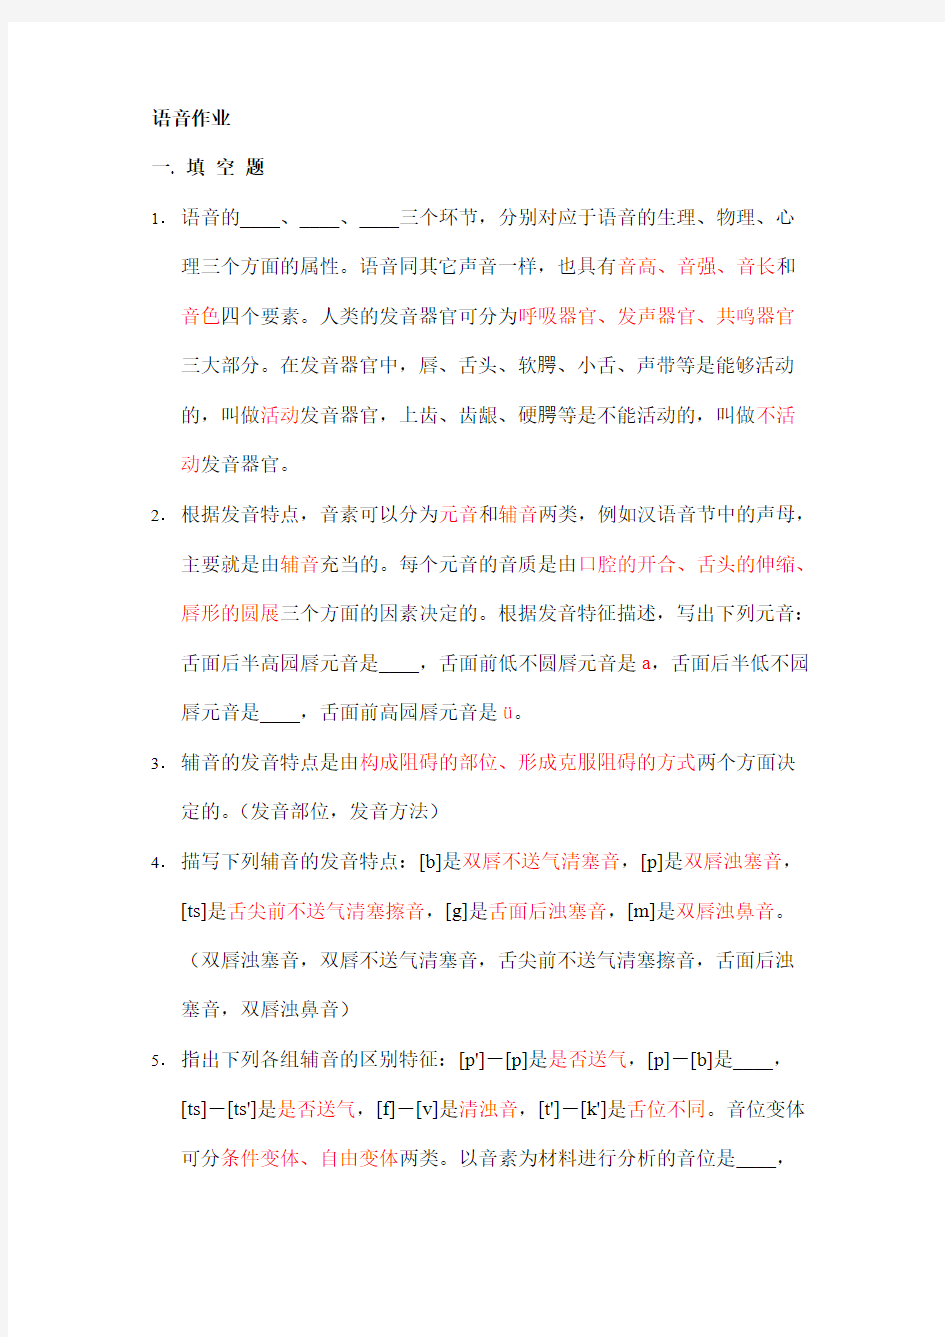 【免费下载】 现代汉语语音作业